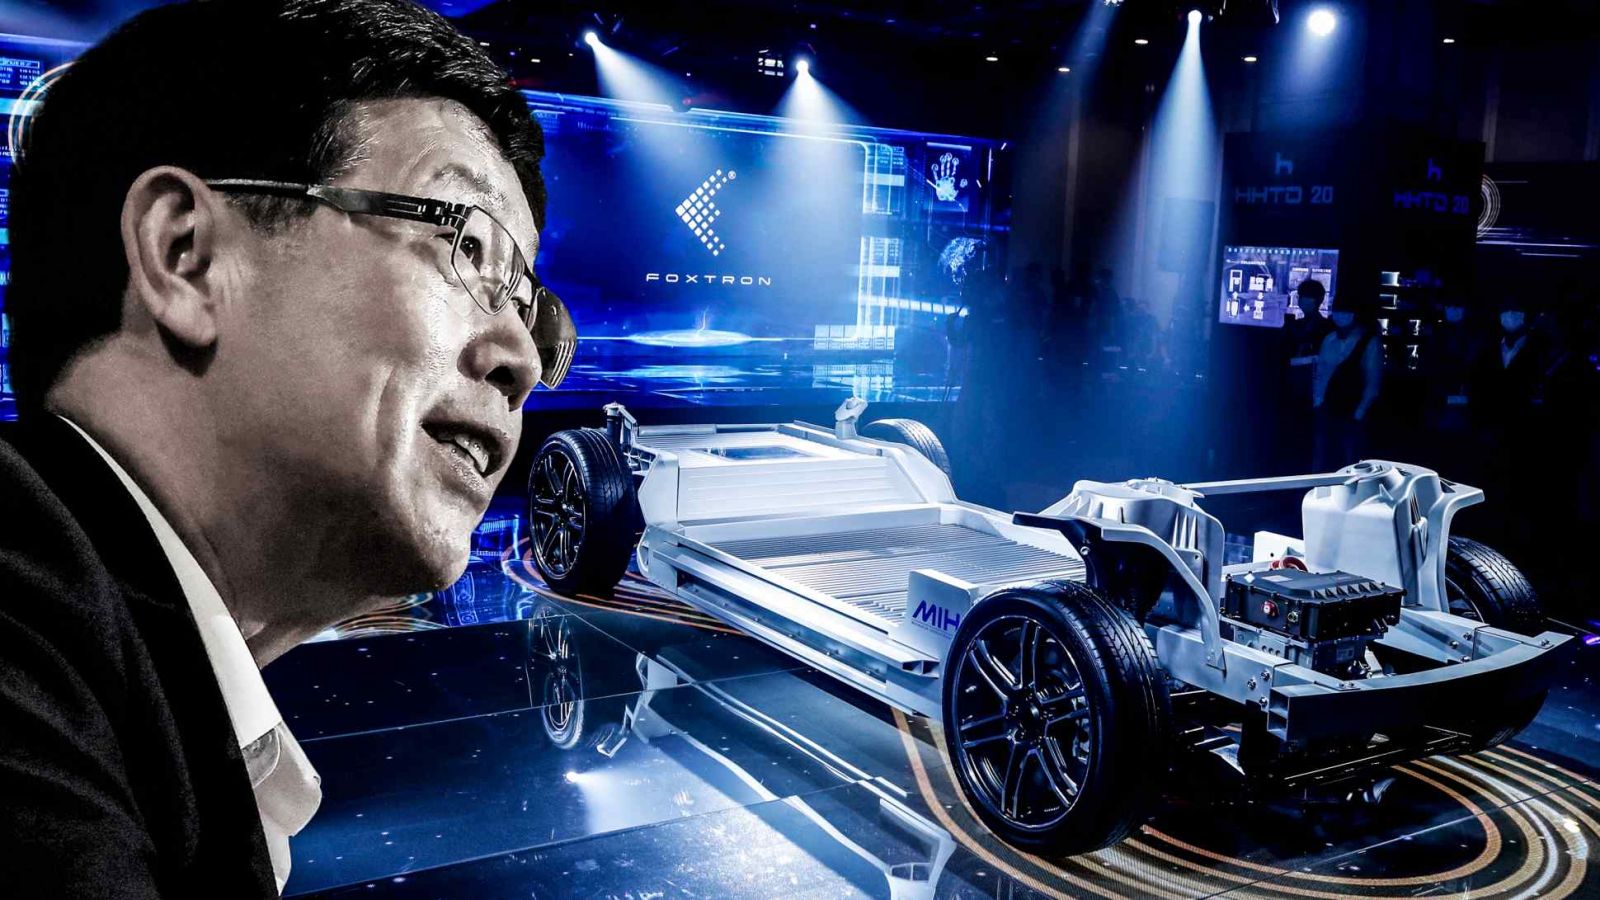 Người đứng đầu Foxconn, Young Liu đã tuyên bố sẽ đưa các thiết kế, linh kiện, bộ phận cơ khí hoặc phần mềm của công ty vào trong 5% xe điện trên thế giới vào năm 2025. (Nguồn ảnh của EPA / Jiji và Reuters)